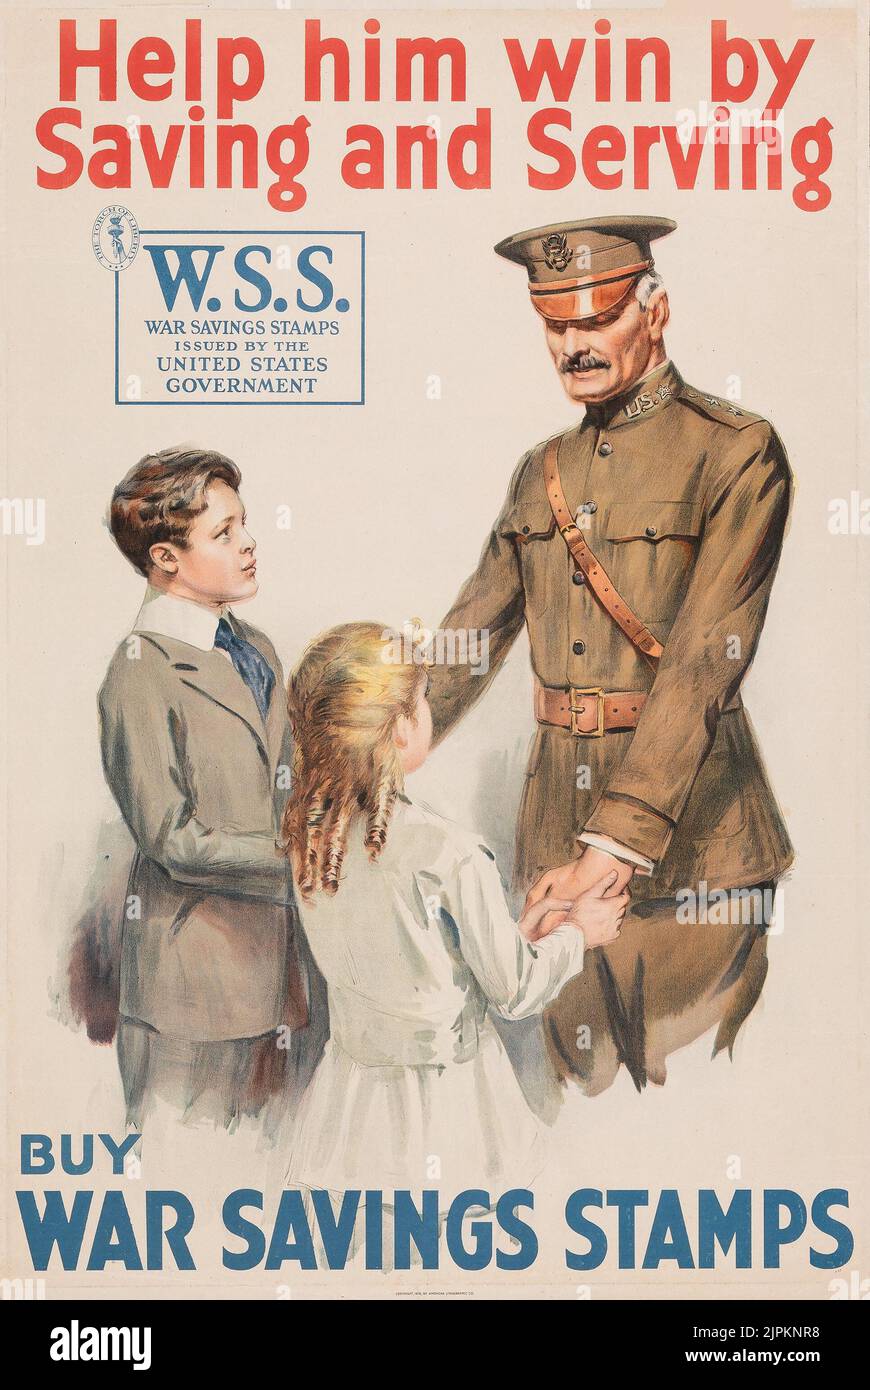 Prima guerra mondiale Propaganda (American litographic Co., 1918) aiutalo a vincere salvandolo e servendolo. Acquistare francobolli di risparmio di guerra. W.S.S. Francobolli di risparmio di guerra. Foto Stock